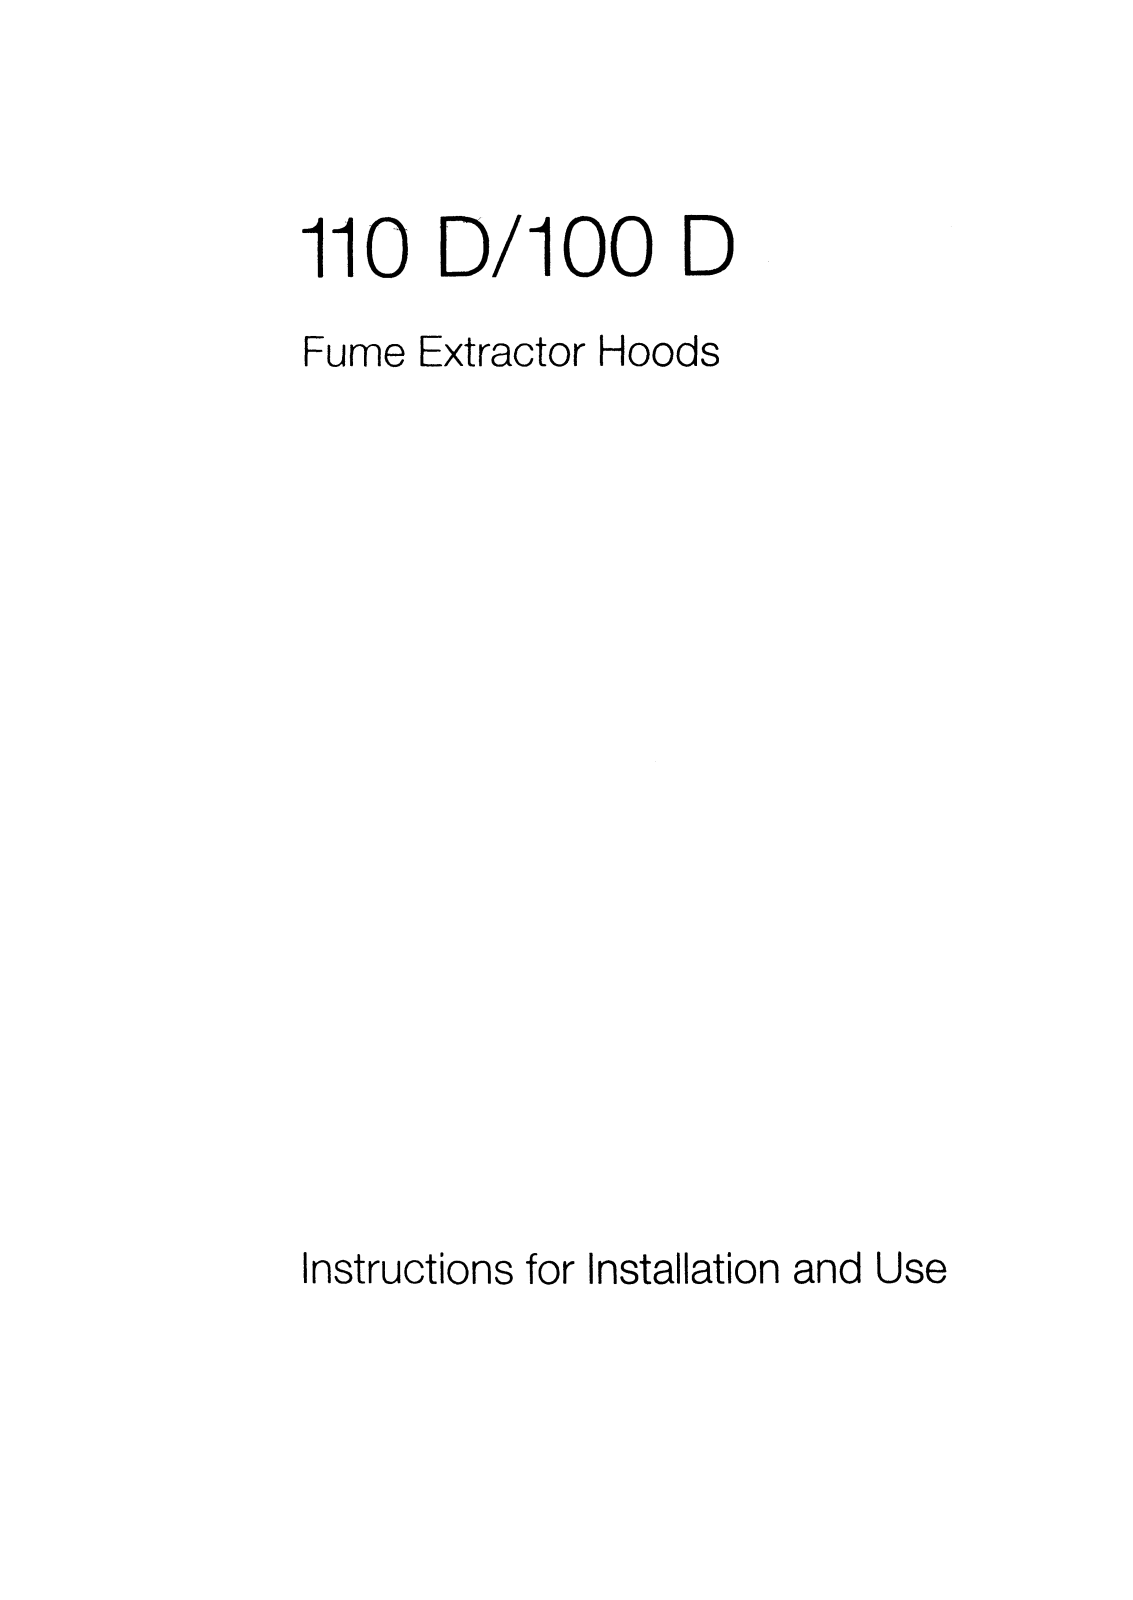 AEG-Electrolux 110DW, 110DD, 110D User Manual